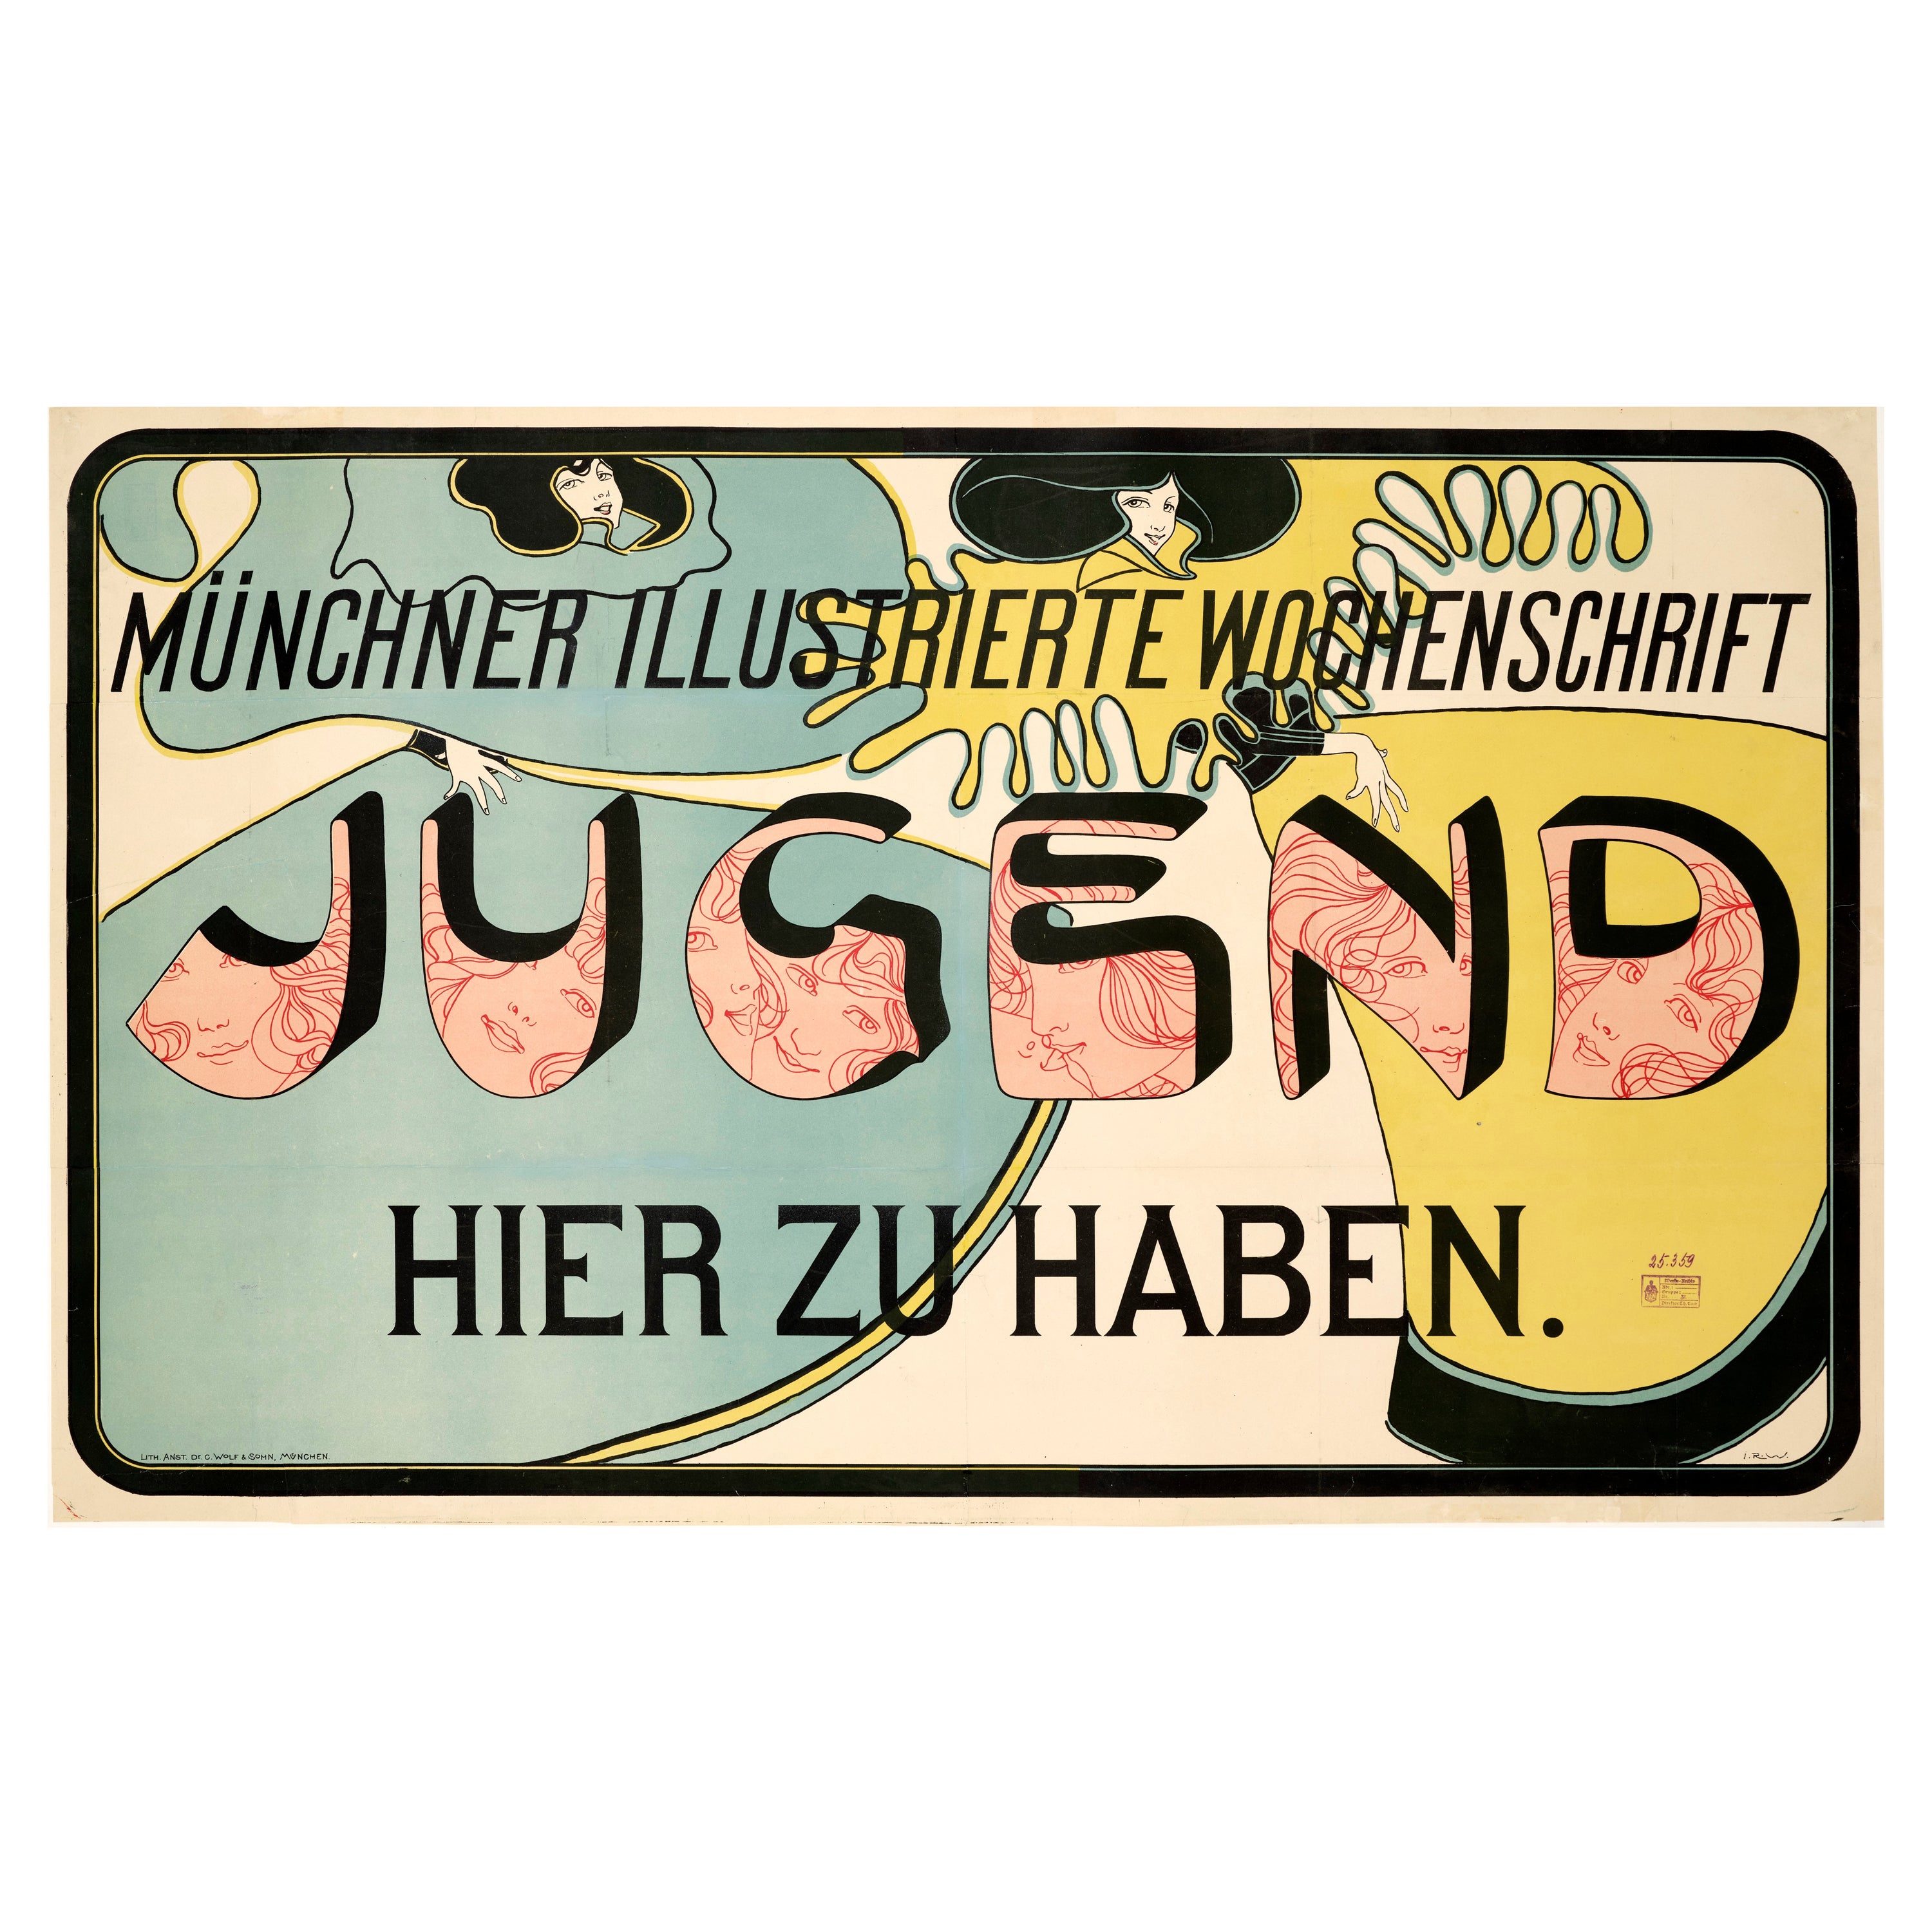 Witzel, Original Art Nouveau Poster, Jugend, Jugendstil, Youth, Munich, Mag 1896